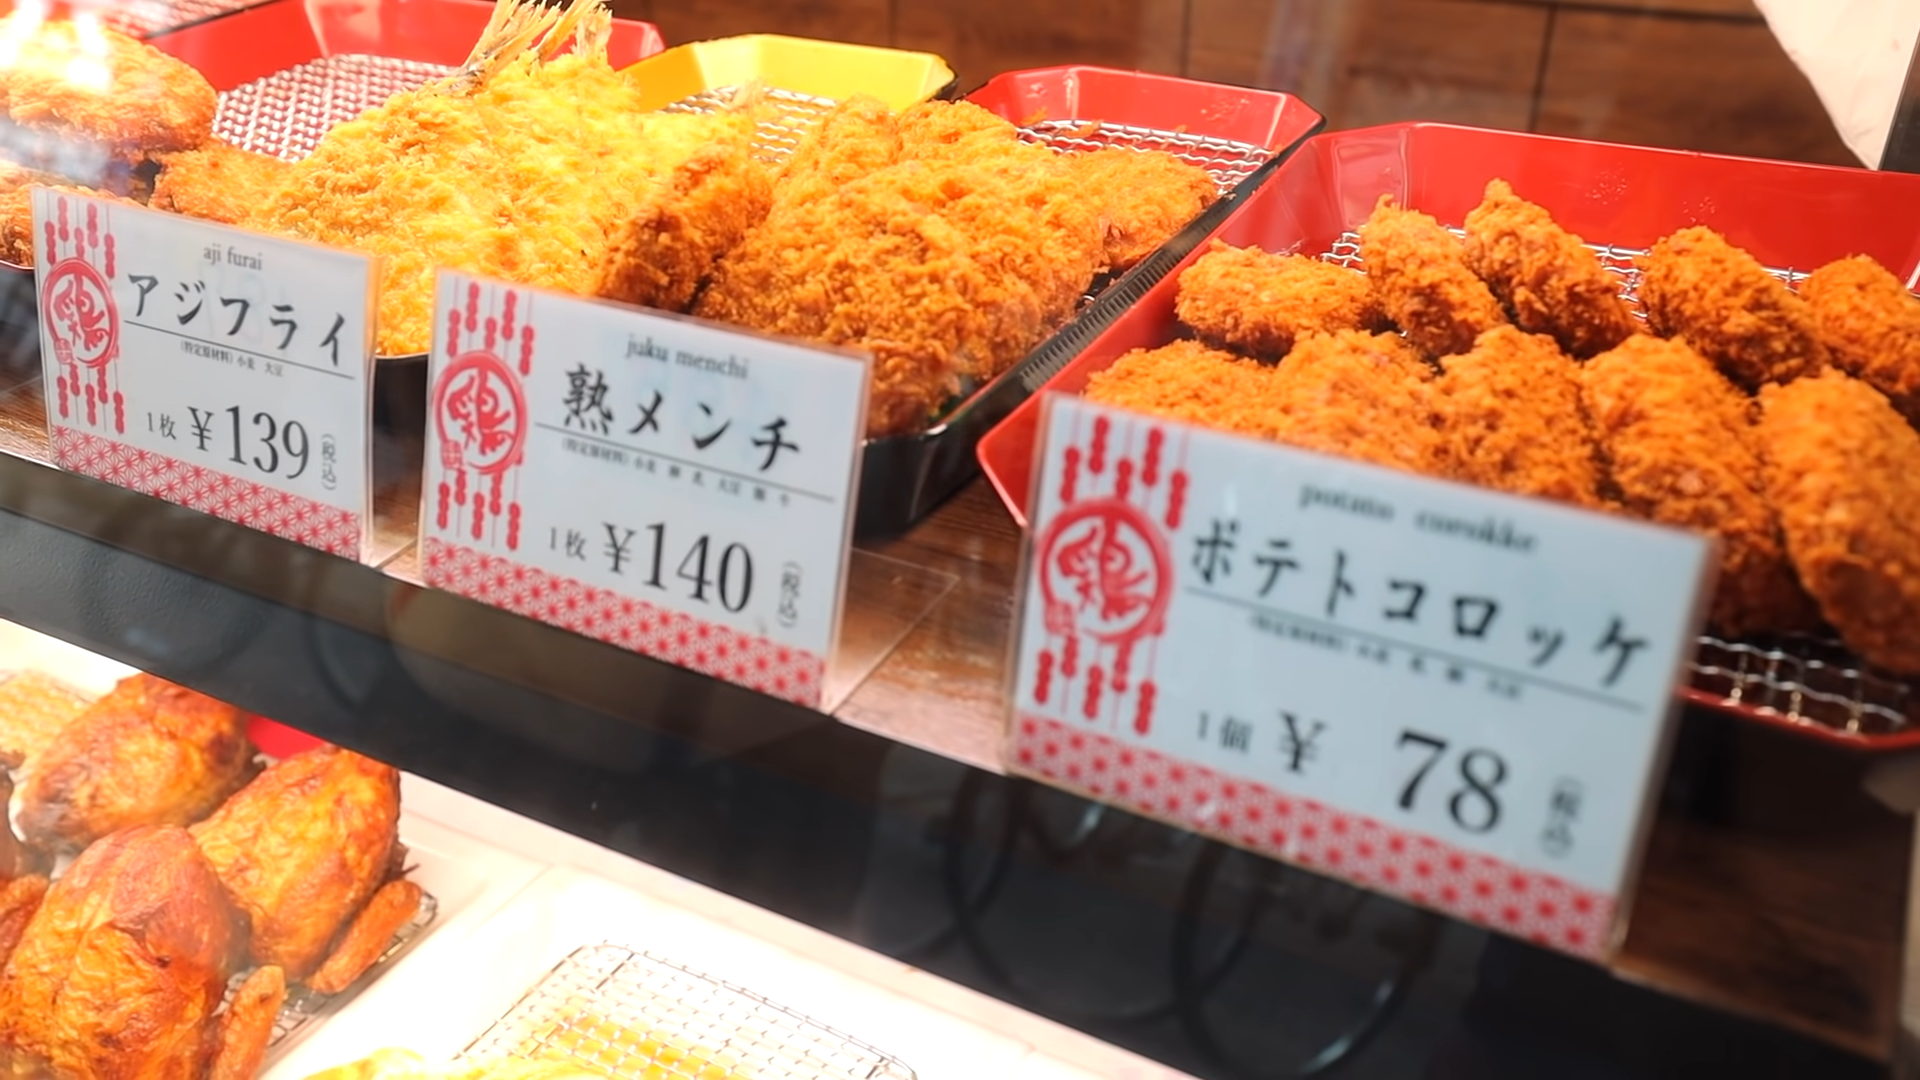 Street food made in Japan